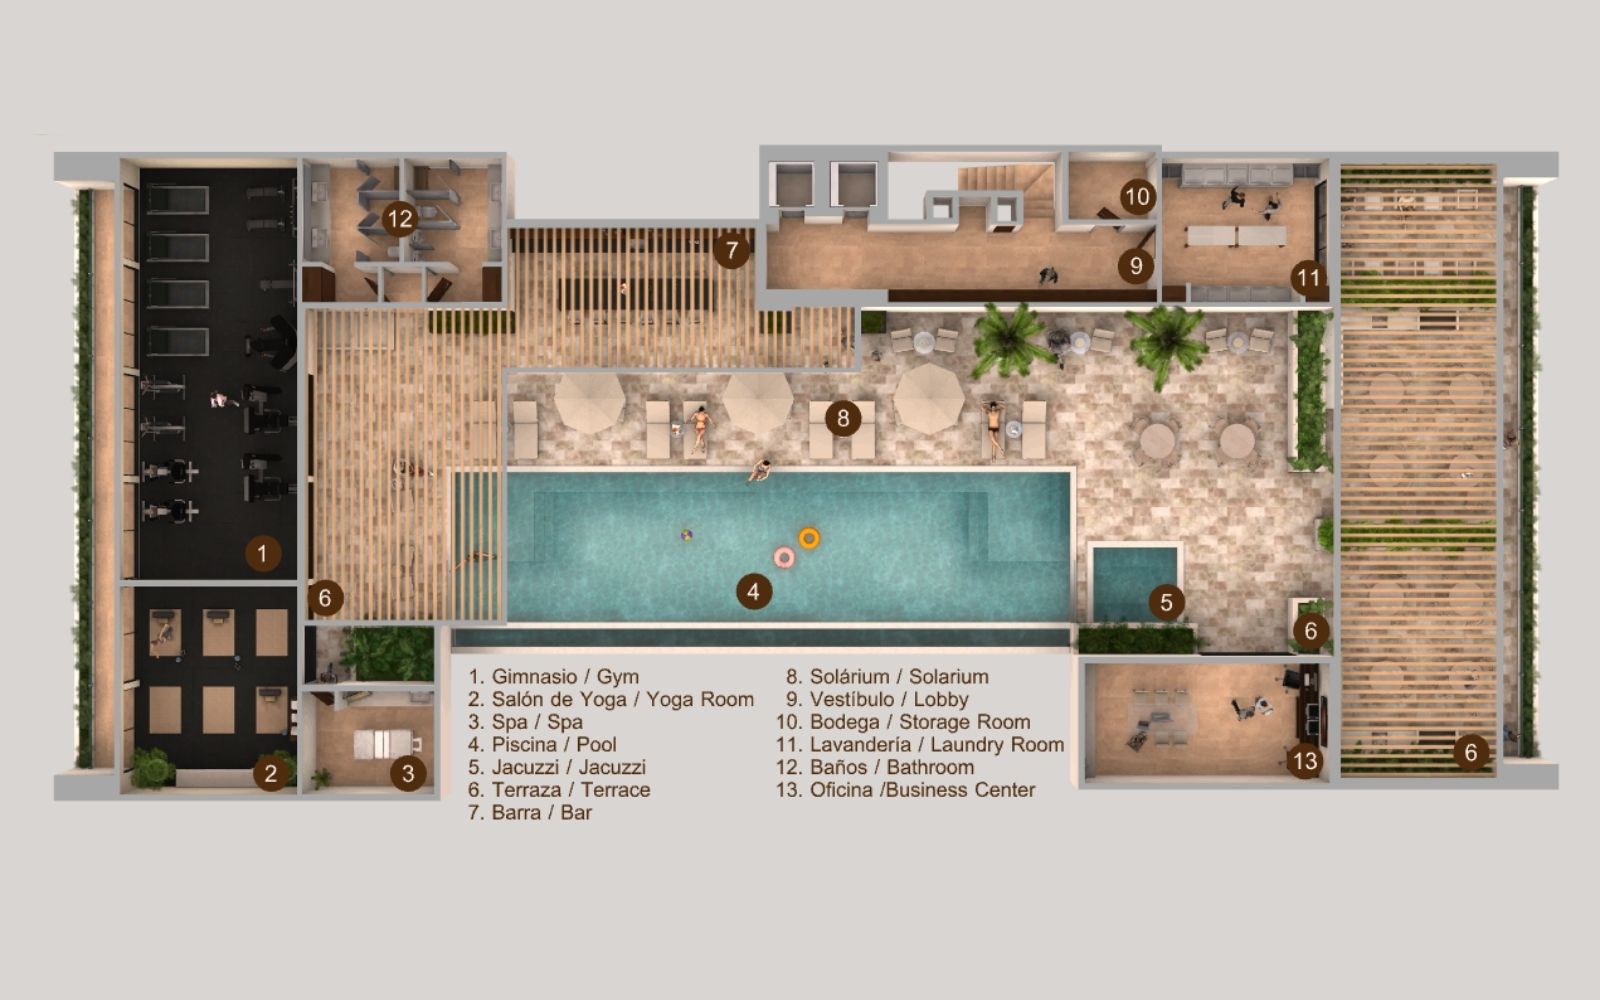 Departamento  3 albercas,  roof top con 5 jacuzzis, area de asador, terraza con barra, Lagunas de Ciudad Mayakoba,